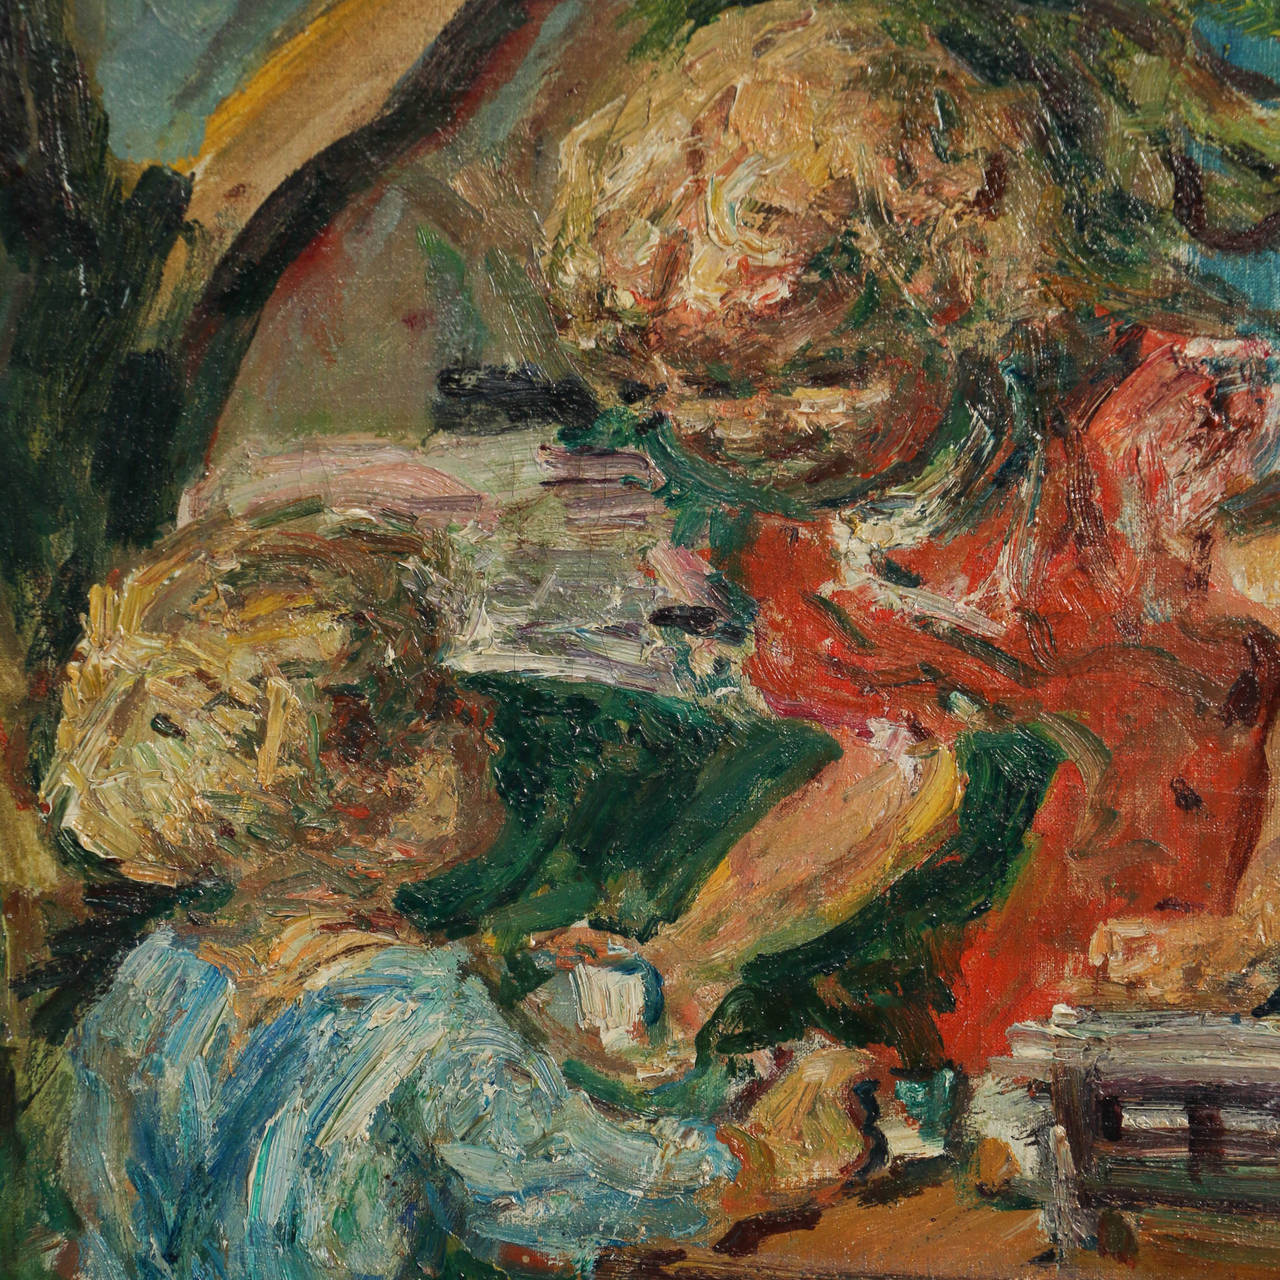 Peinture originale à l'huile sur toile de  deux enfants prenant le thé à l'extérieur. Des couleurs vibrantes de vert, de bleu et de rouge dans cette charmante scène.  Signé Ludvig Jacobsen.

** En raison de l'actualité et de la fluctuation des prix